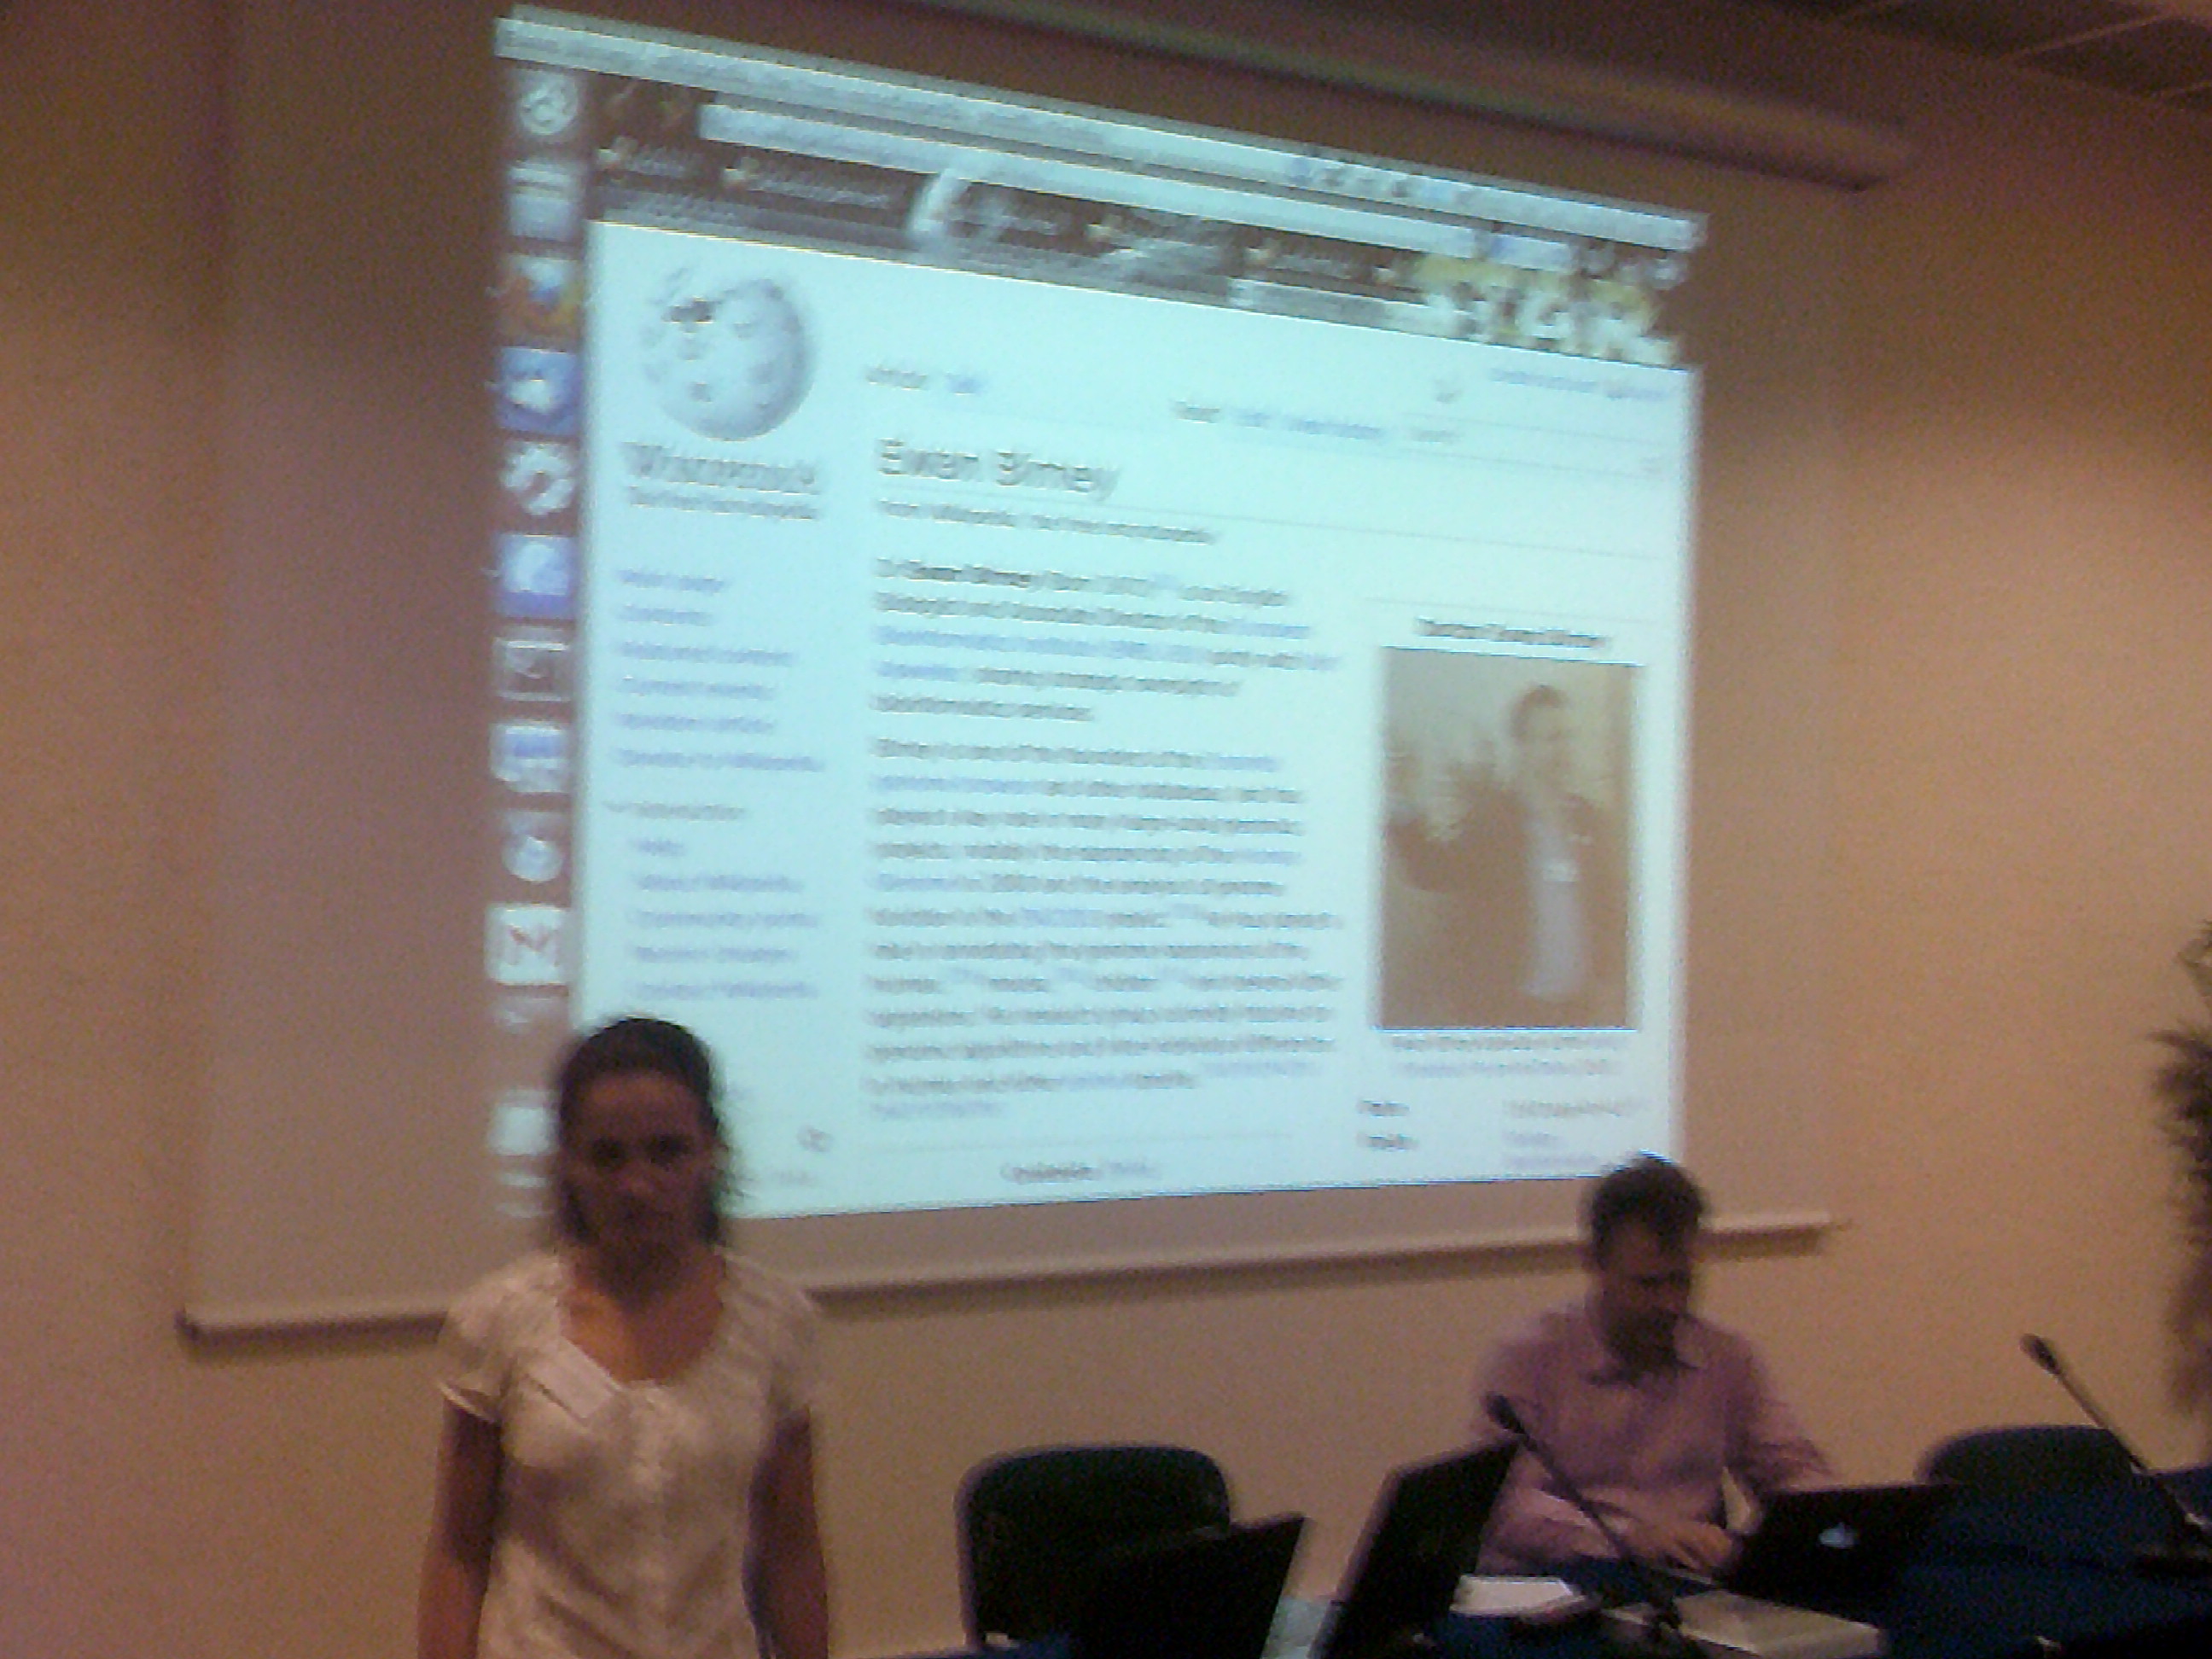 Sinziana presenting at IWOCA 2013.